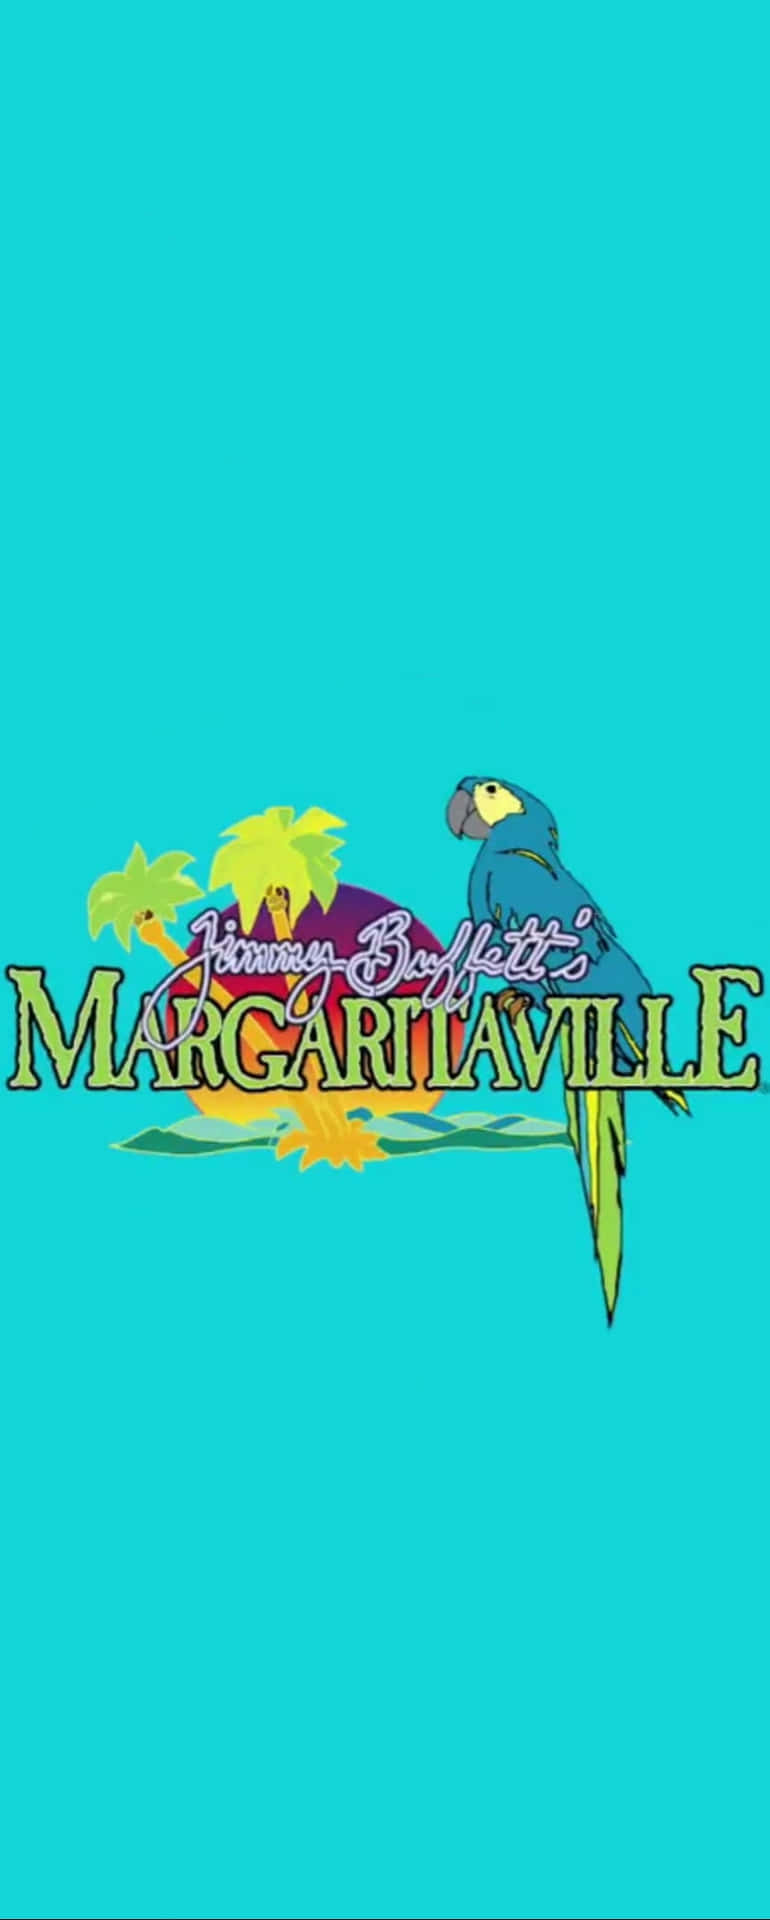 Jimmy Buffett's Margaritaville Logo Wallpaper